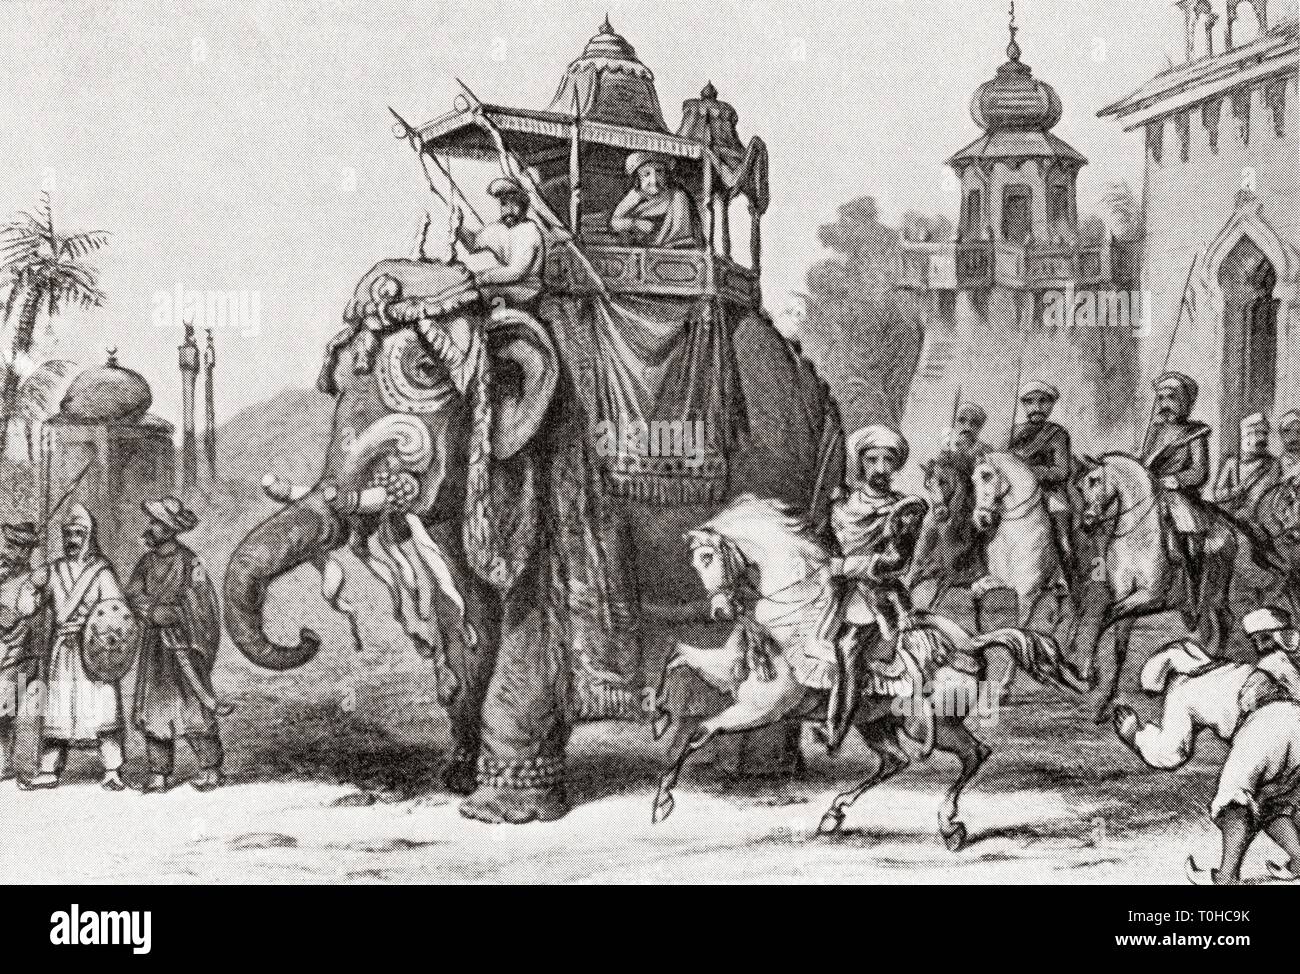 Nana Sahib laissant Lucknow pour Cawnpore en 1857 ancienne gravure vintage 1900s, Nana Saheb Peshwa II, Dhondu Pant, Indien Peshwa de l'empire Maratha, aristocrate et combattant, qui a dirigé la rébellion à Kanpur pendant la Grande révolte de 1857 Banque D'Images